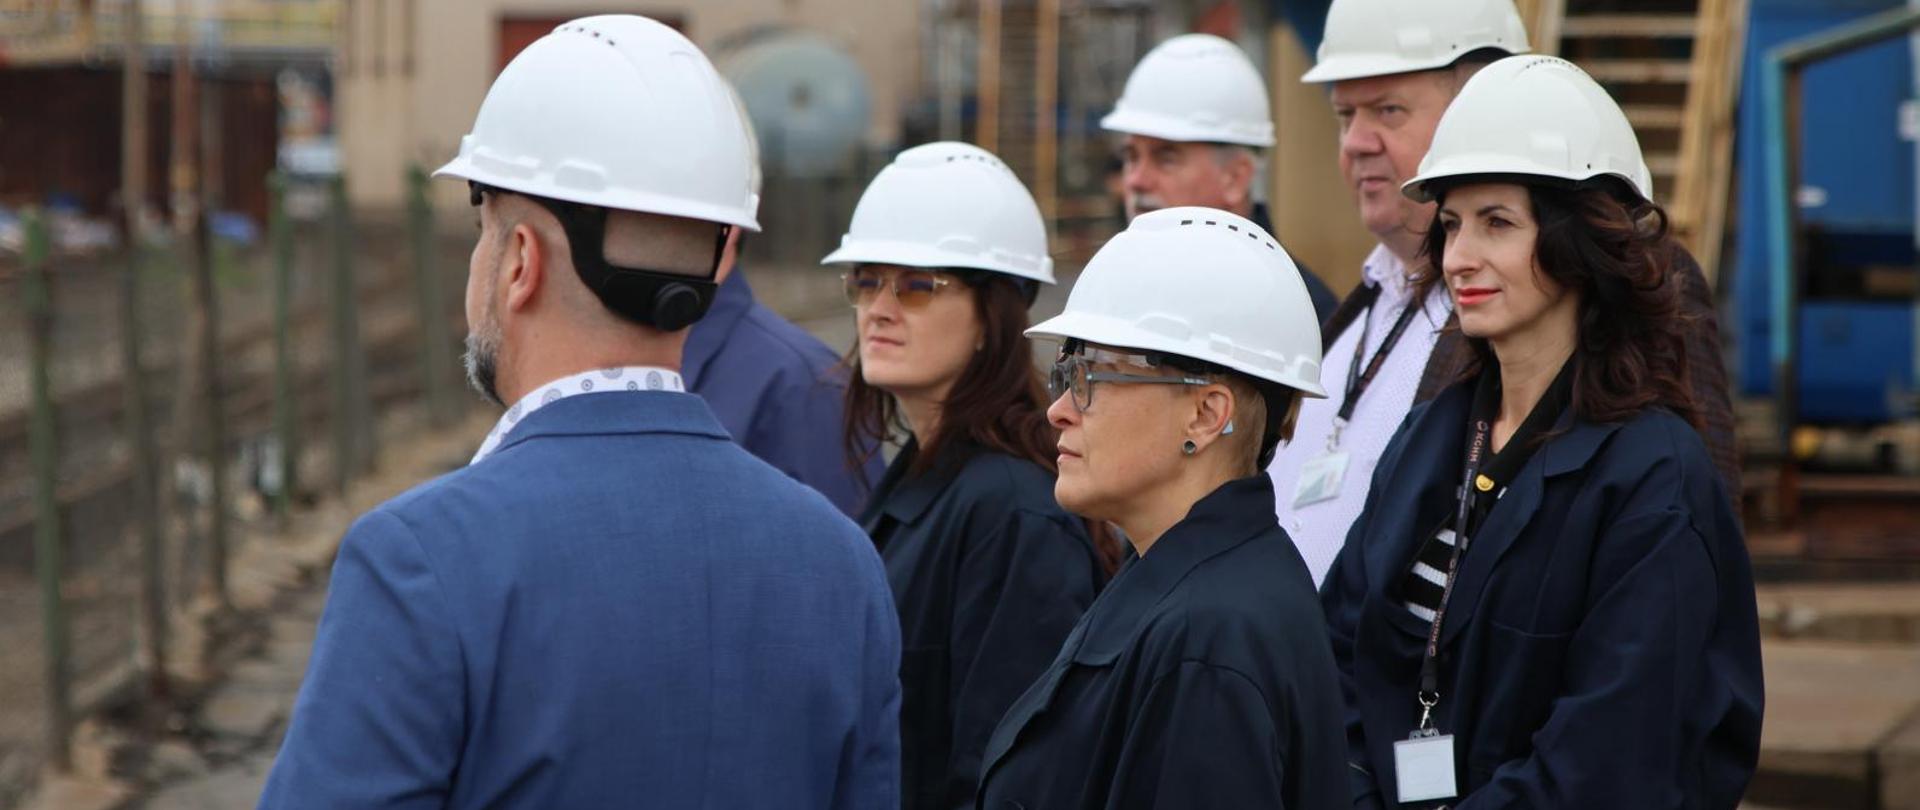 Wiceminister Mrówczyńska w białym kasku stoi wśród kilku osób w takich samych kaskach, patrzą w lewo, za nimi w tle widać wnętrze obiektu przemysłowego.